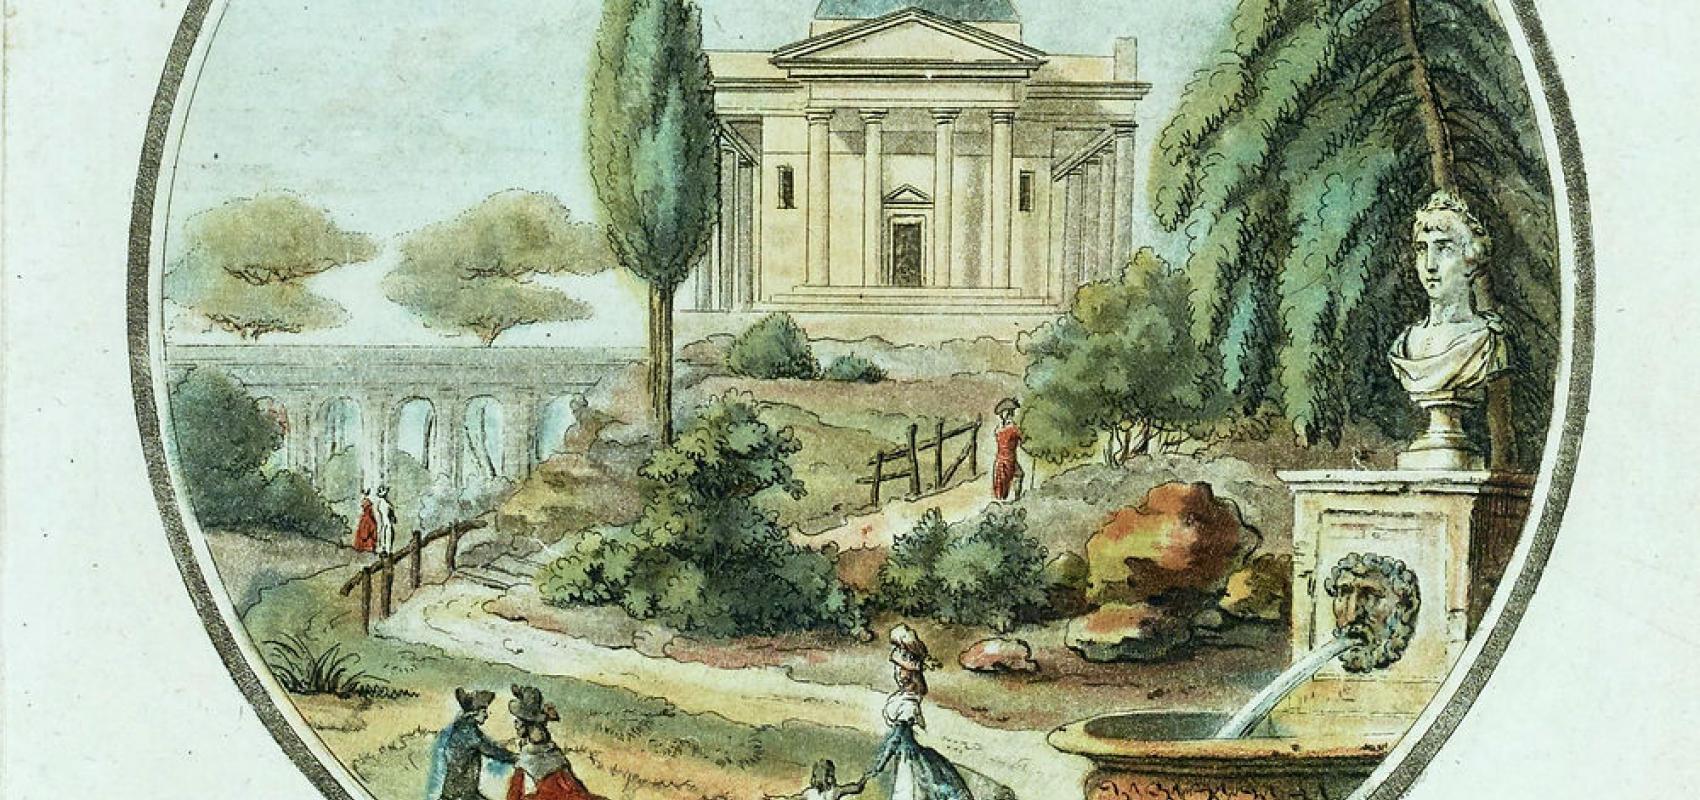 Vue d'un Jardin anglais, gravure par Laurent Guyot, 1796 -  - BnF, département des Estampes et et de la photographie